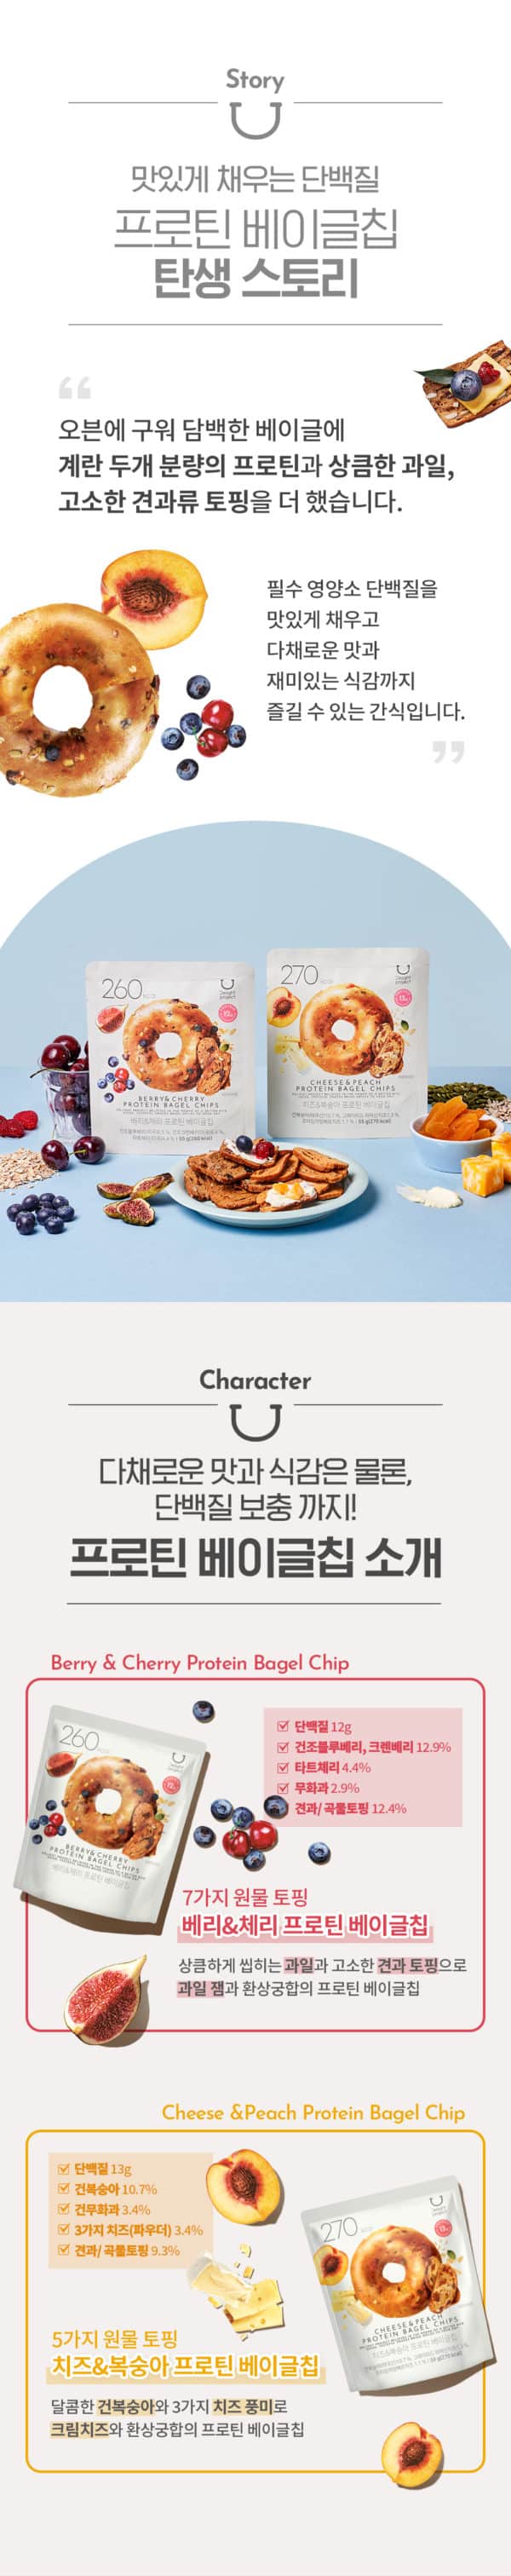 韓國食品-[딜라이트 프로젝트] 프로틴 베이글칩 (베리 & 체리) 55g